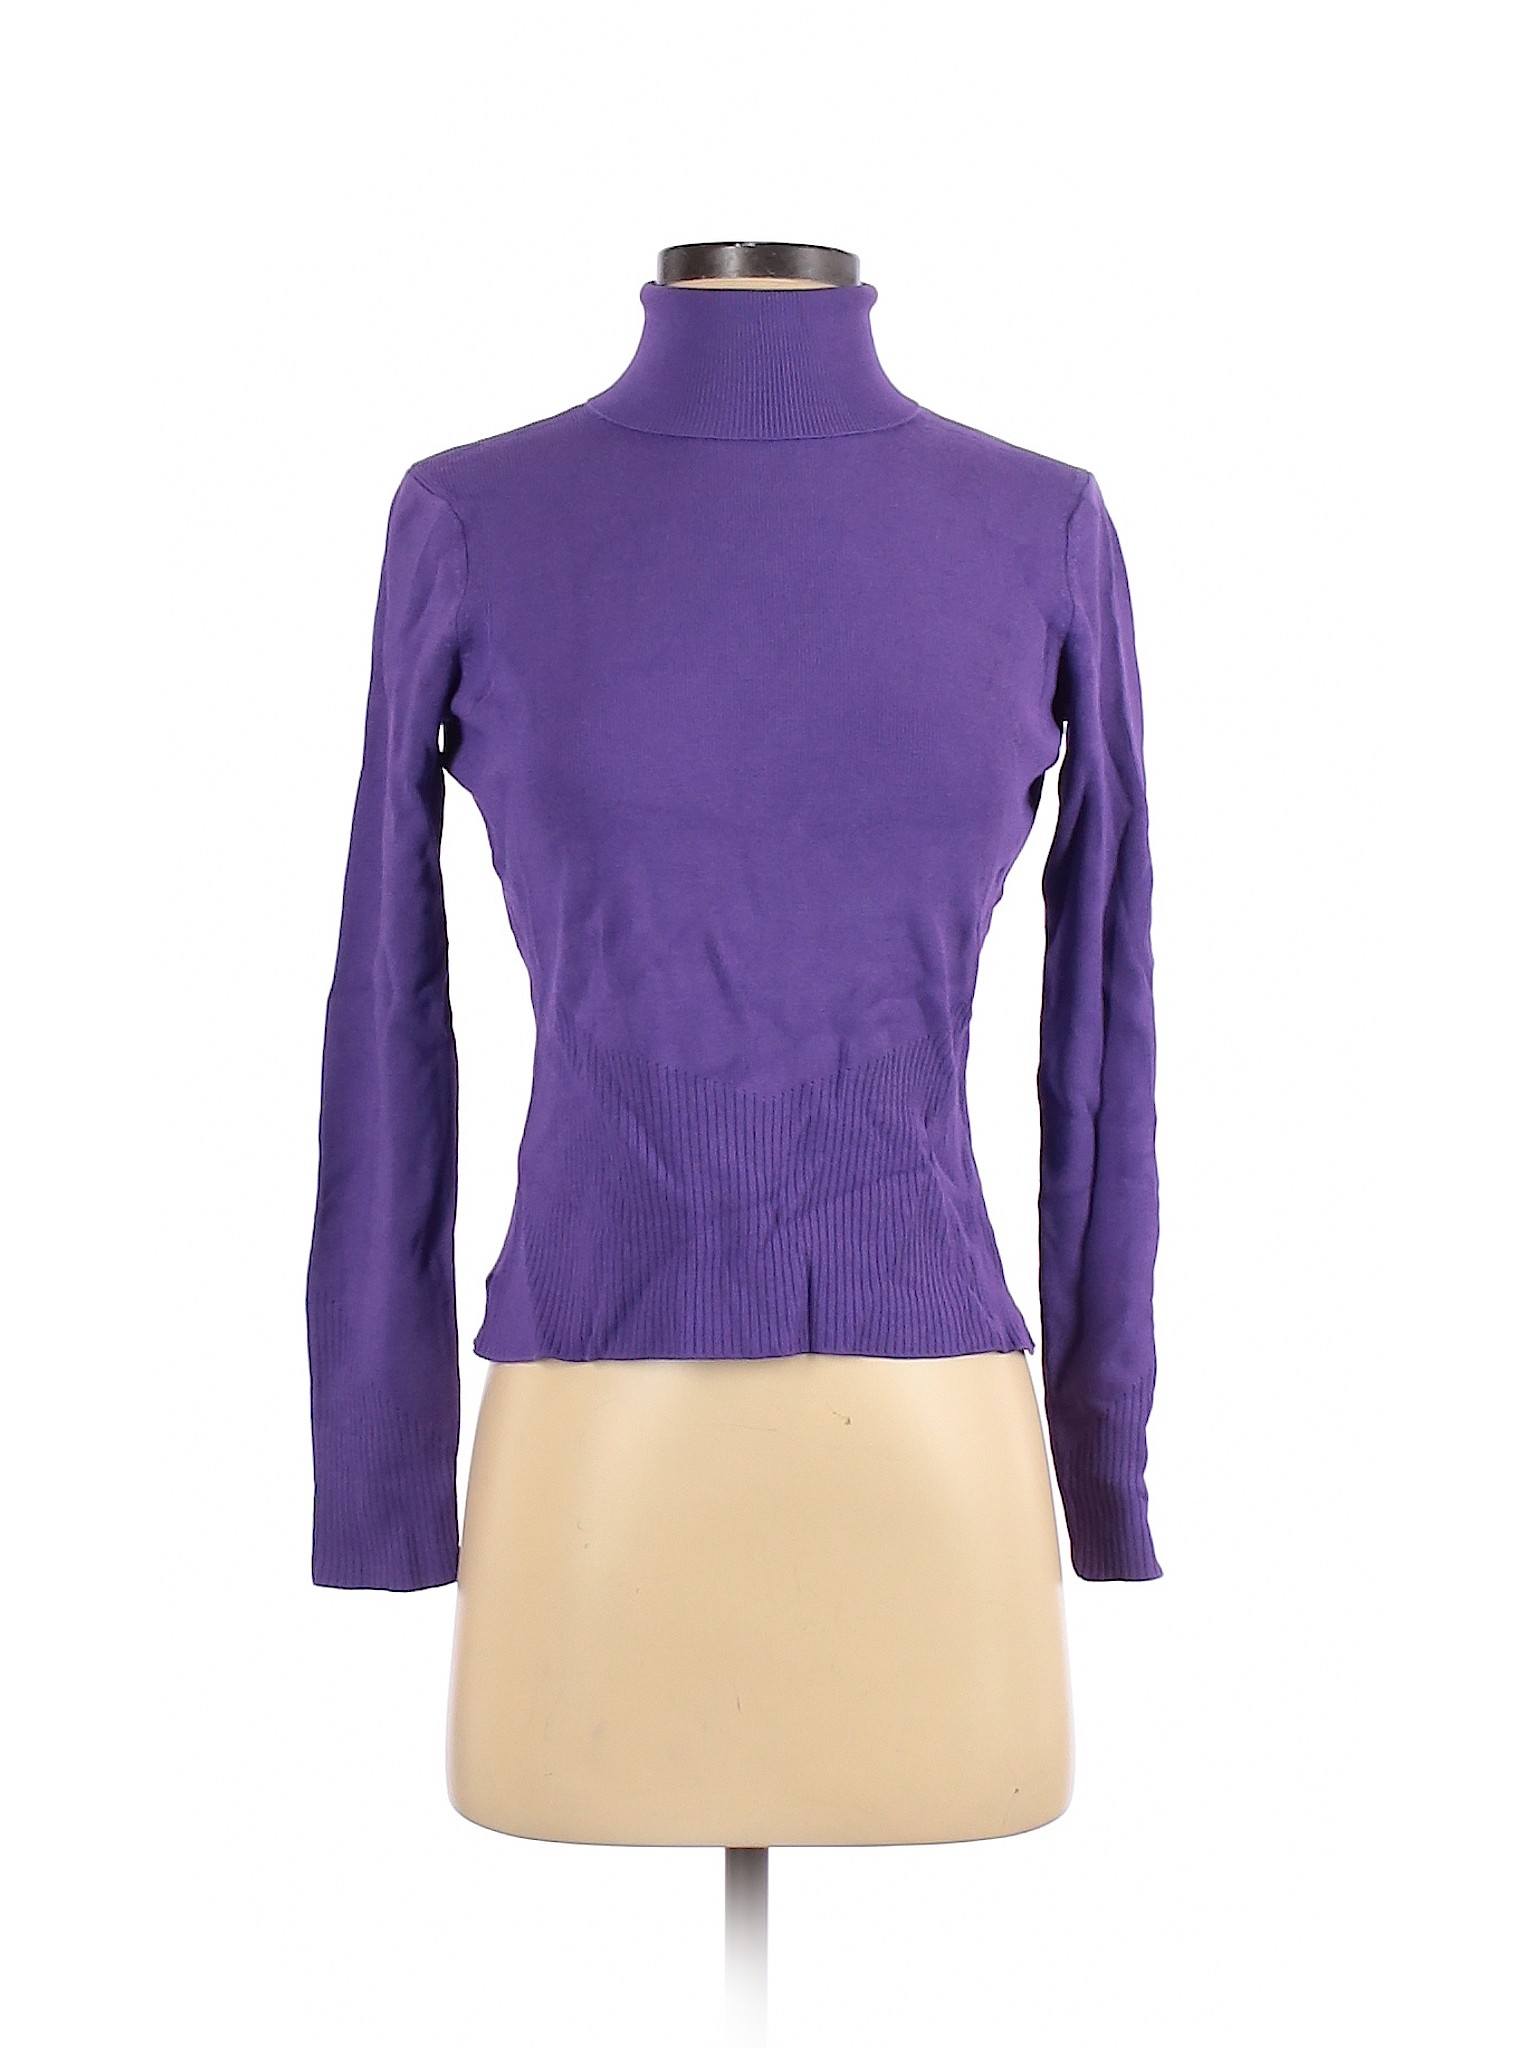 City Silk Women Purple Turtleneck Sweater S | eBay